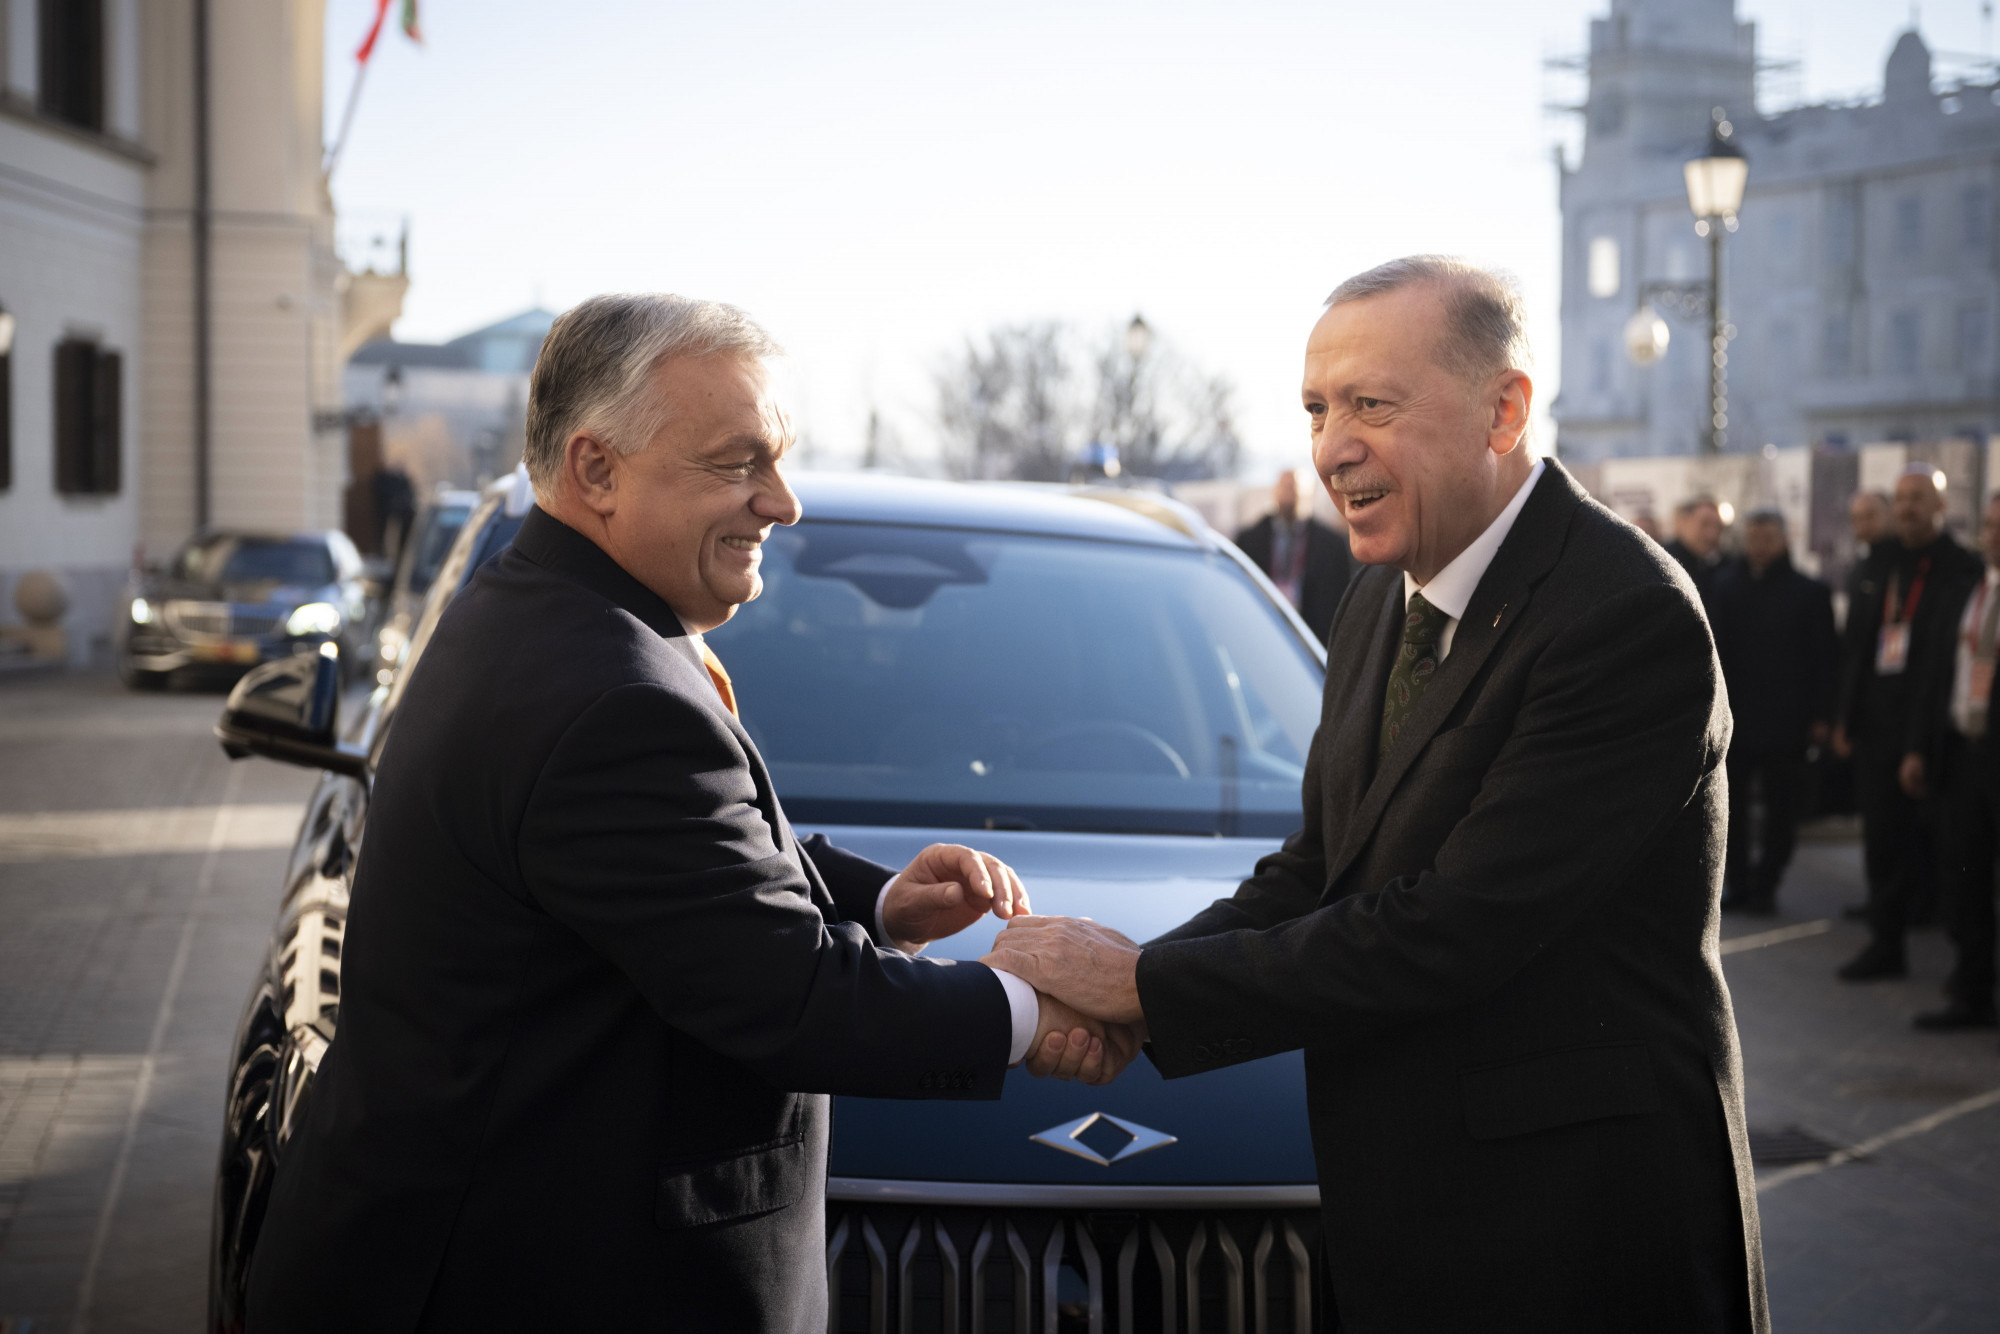 Úriasnak nevezte Orbán az Erdoğantól ajándékba kapott autót, és közölte, hogy hazamegy vele a falujába